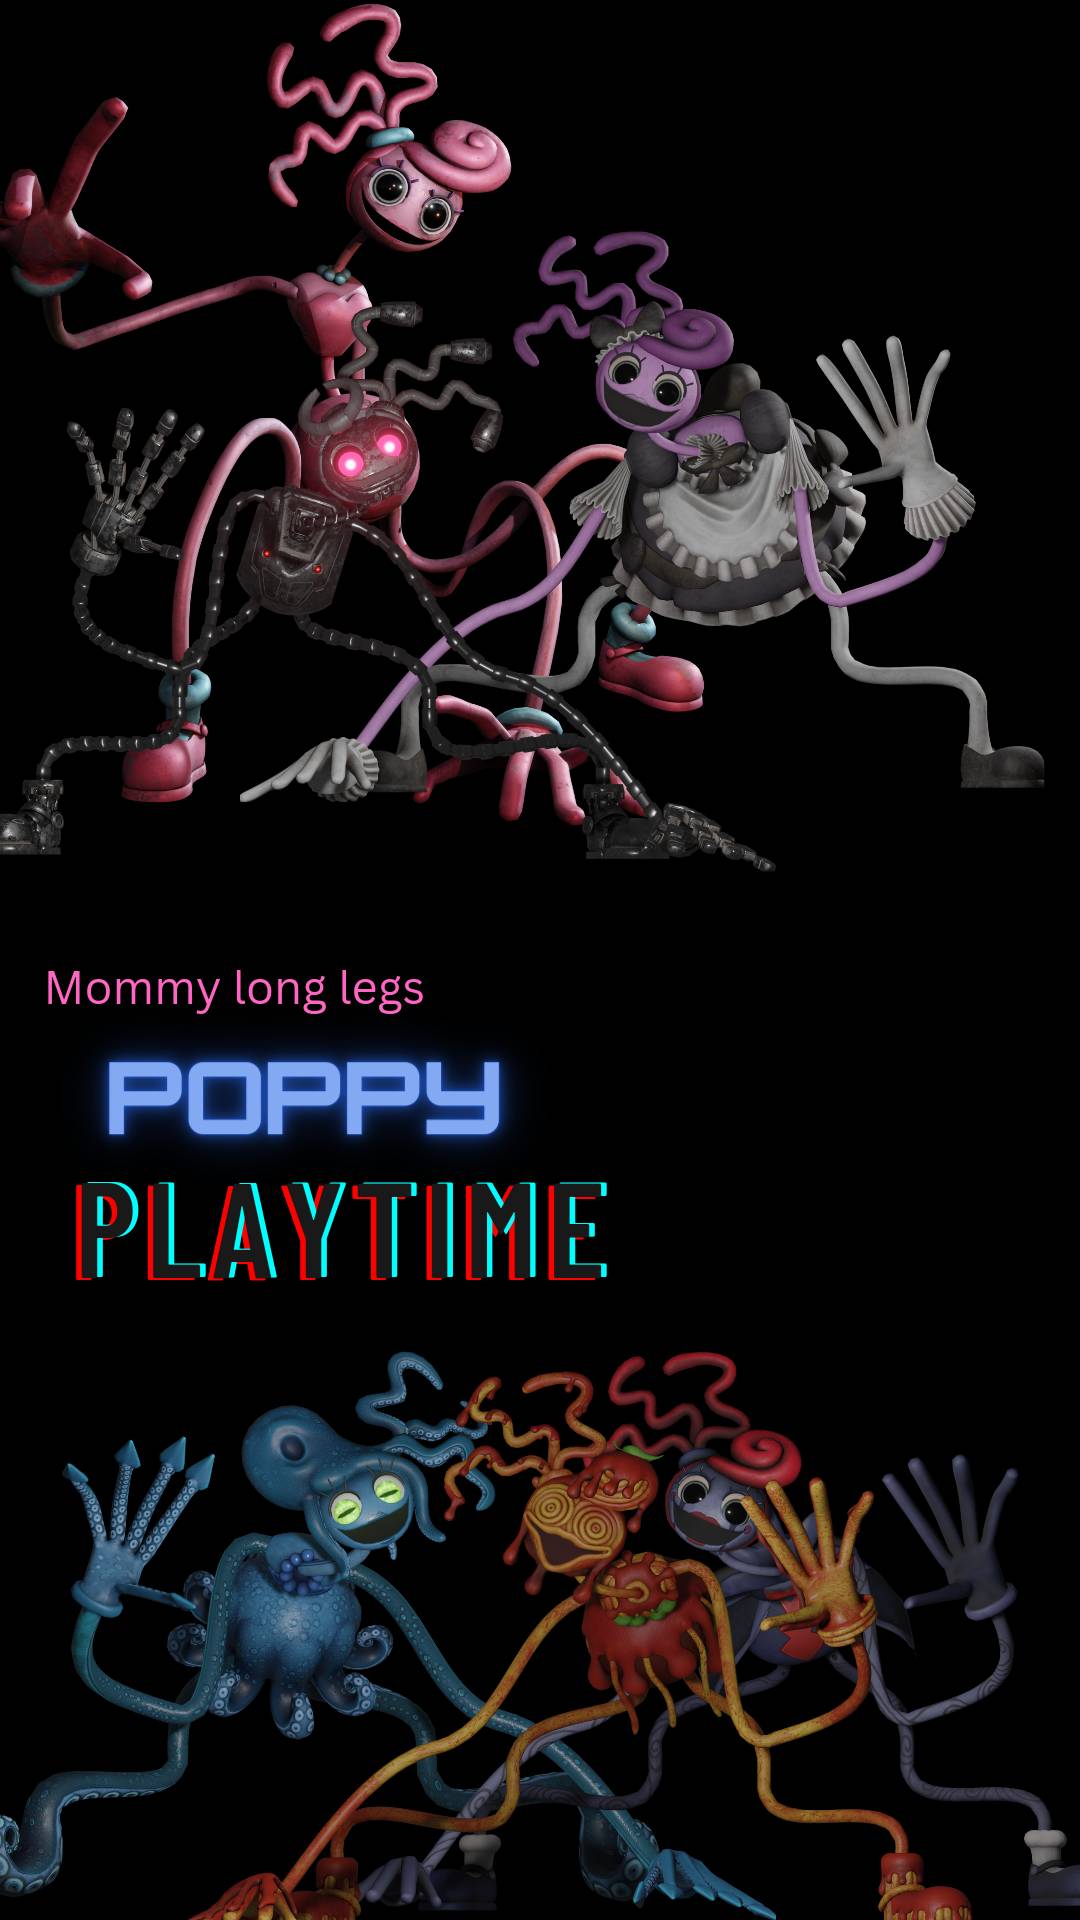 HD mommy long legs wallpapers